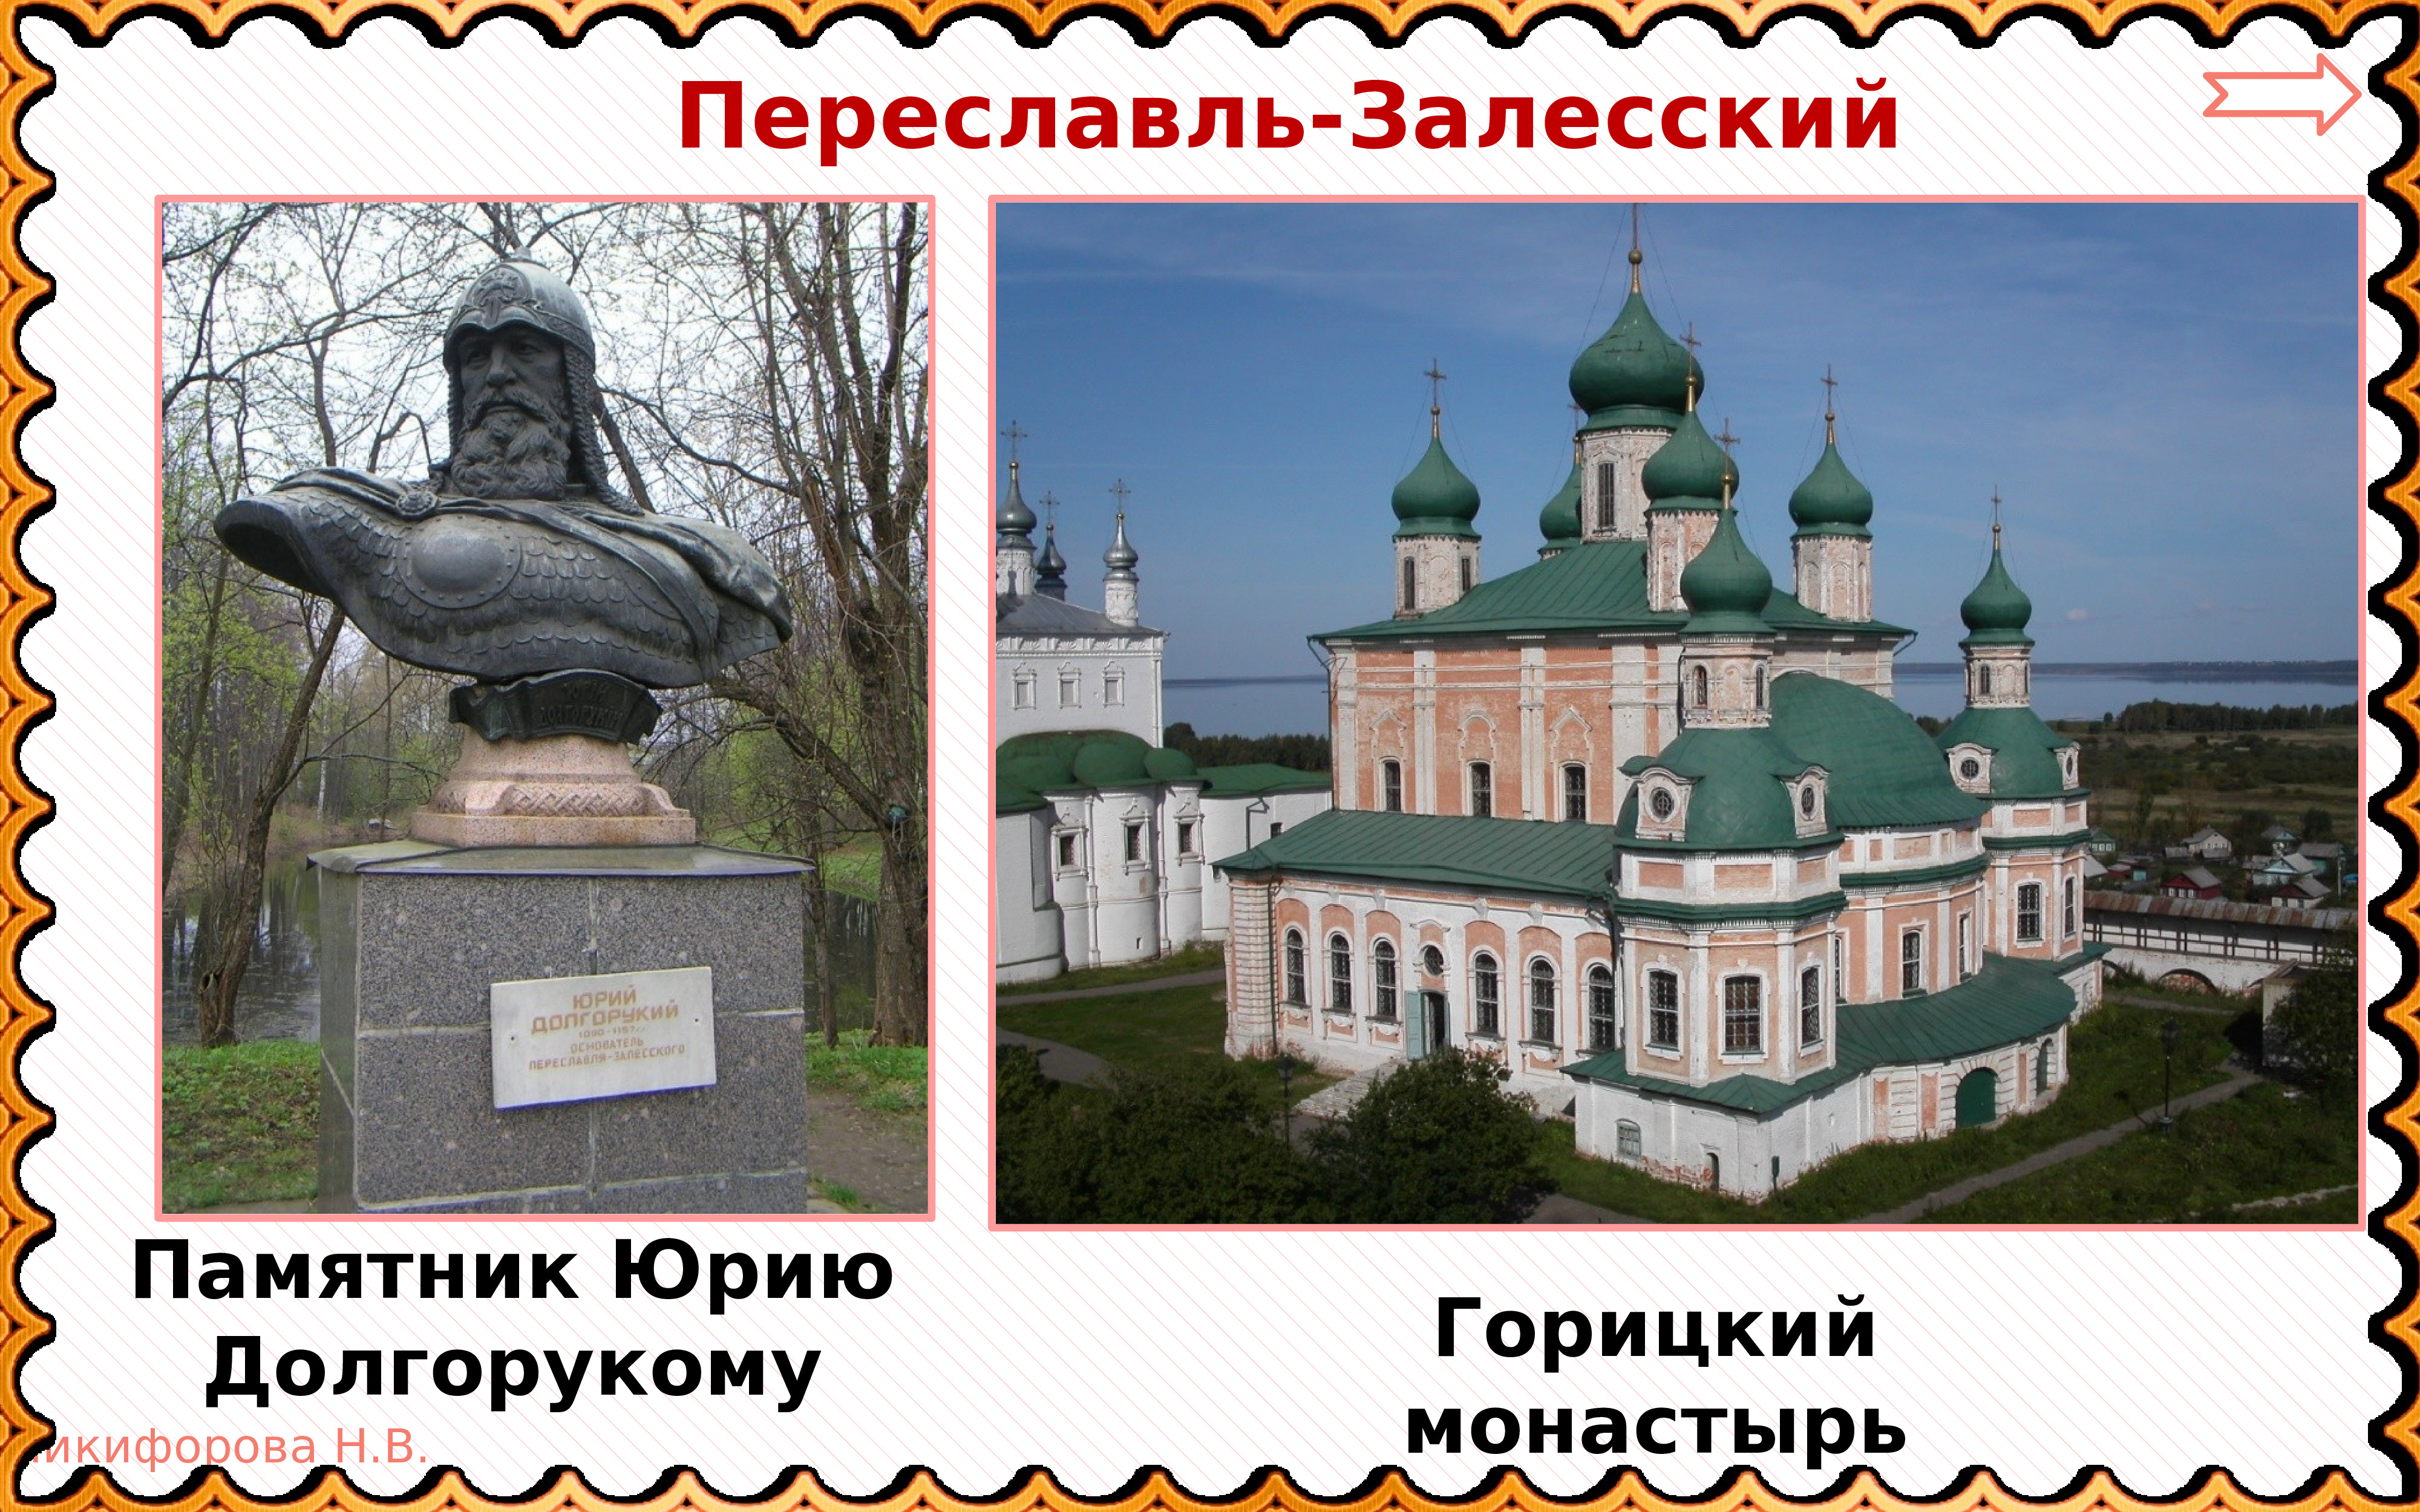 Памятник Юрию Долгорукому в Переславле-Залесском